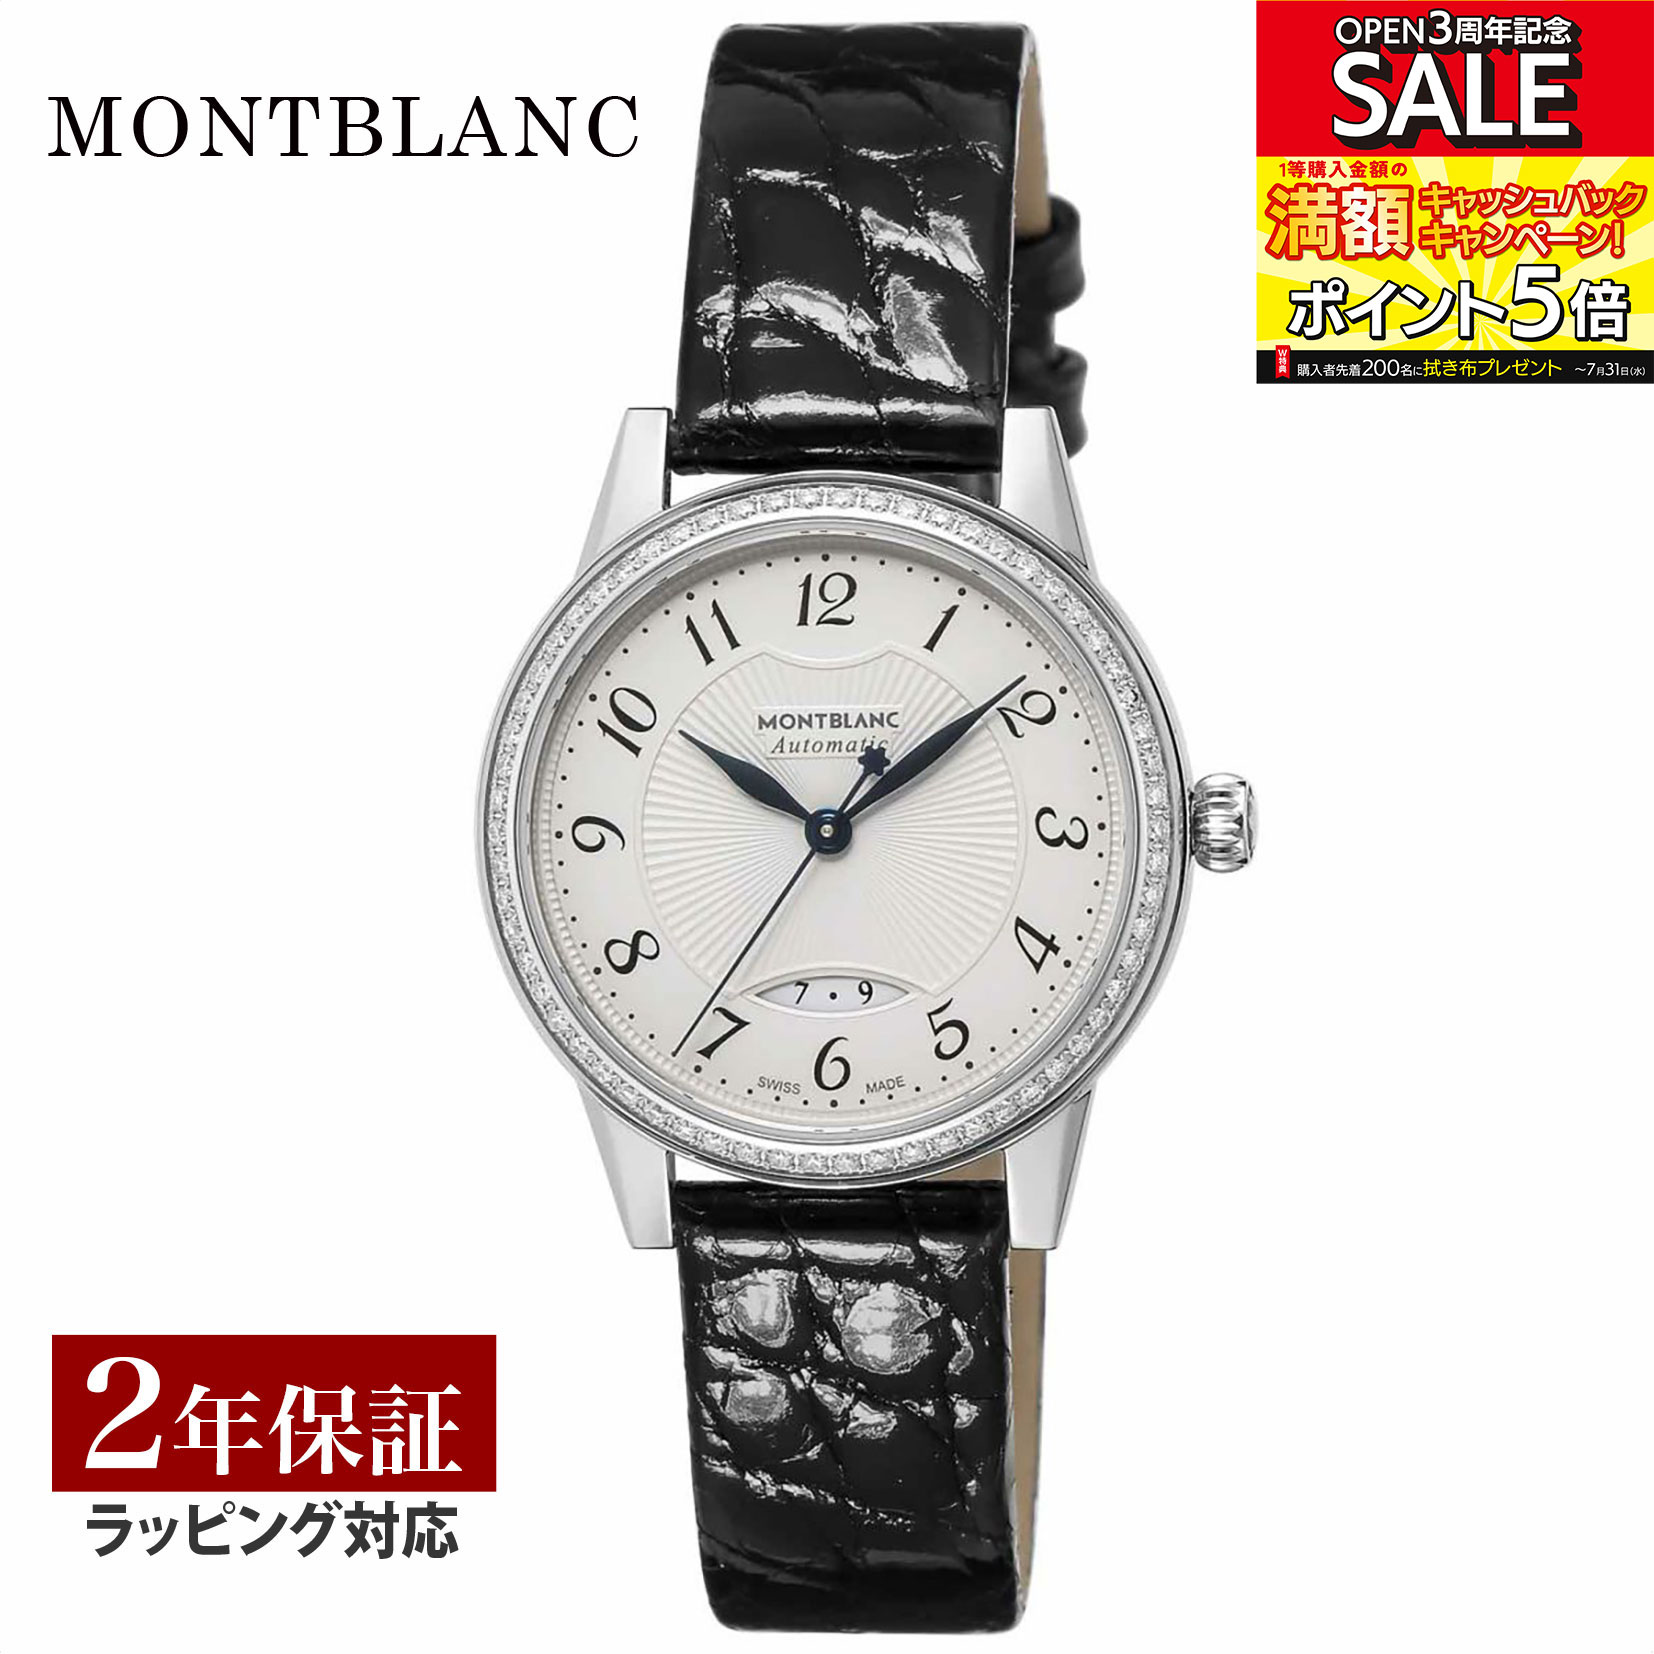 モンブラン Montblanc レディース 時計 BOHEME ボエム 自動巻 シルバー 111057 時計 腕時計 高級腕時計 ブランド 【ローン金利無料】